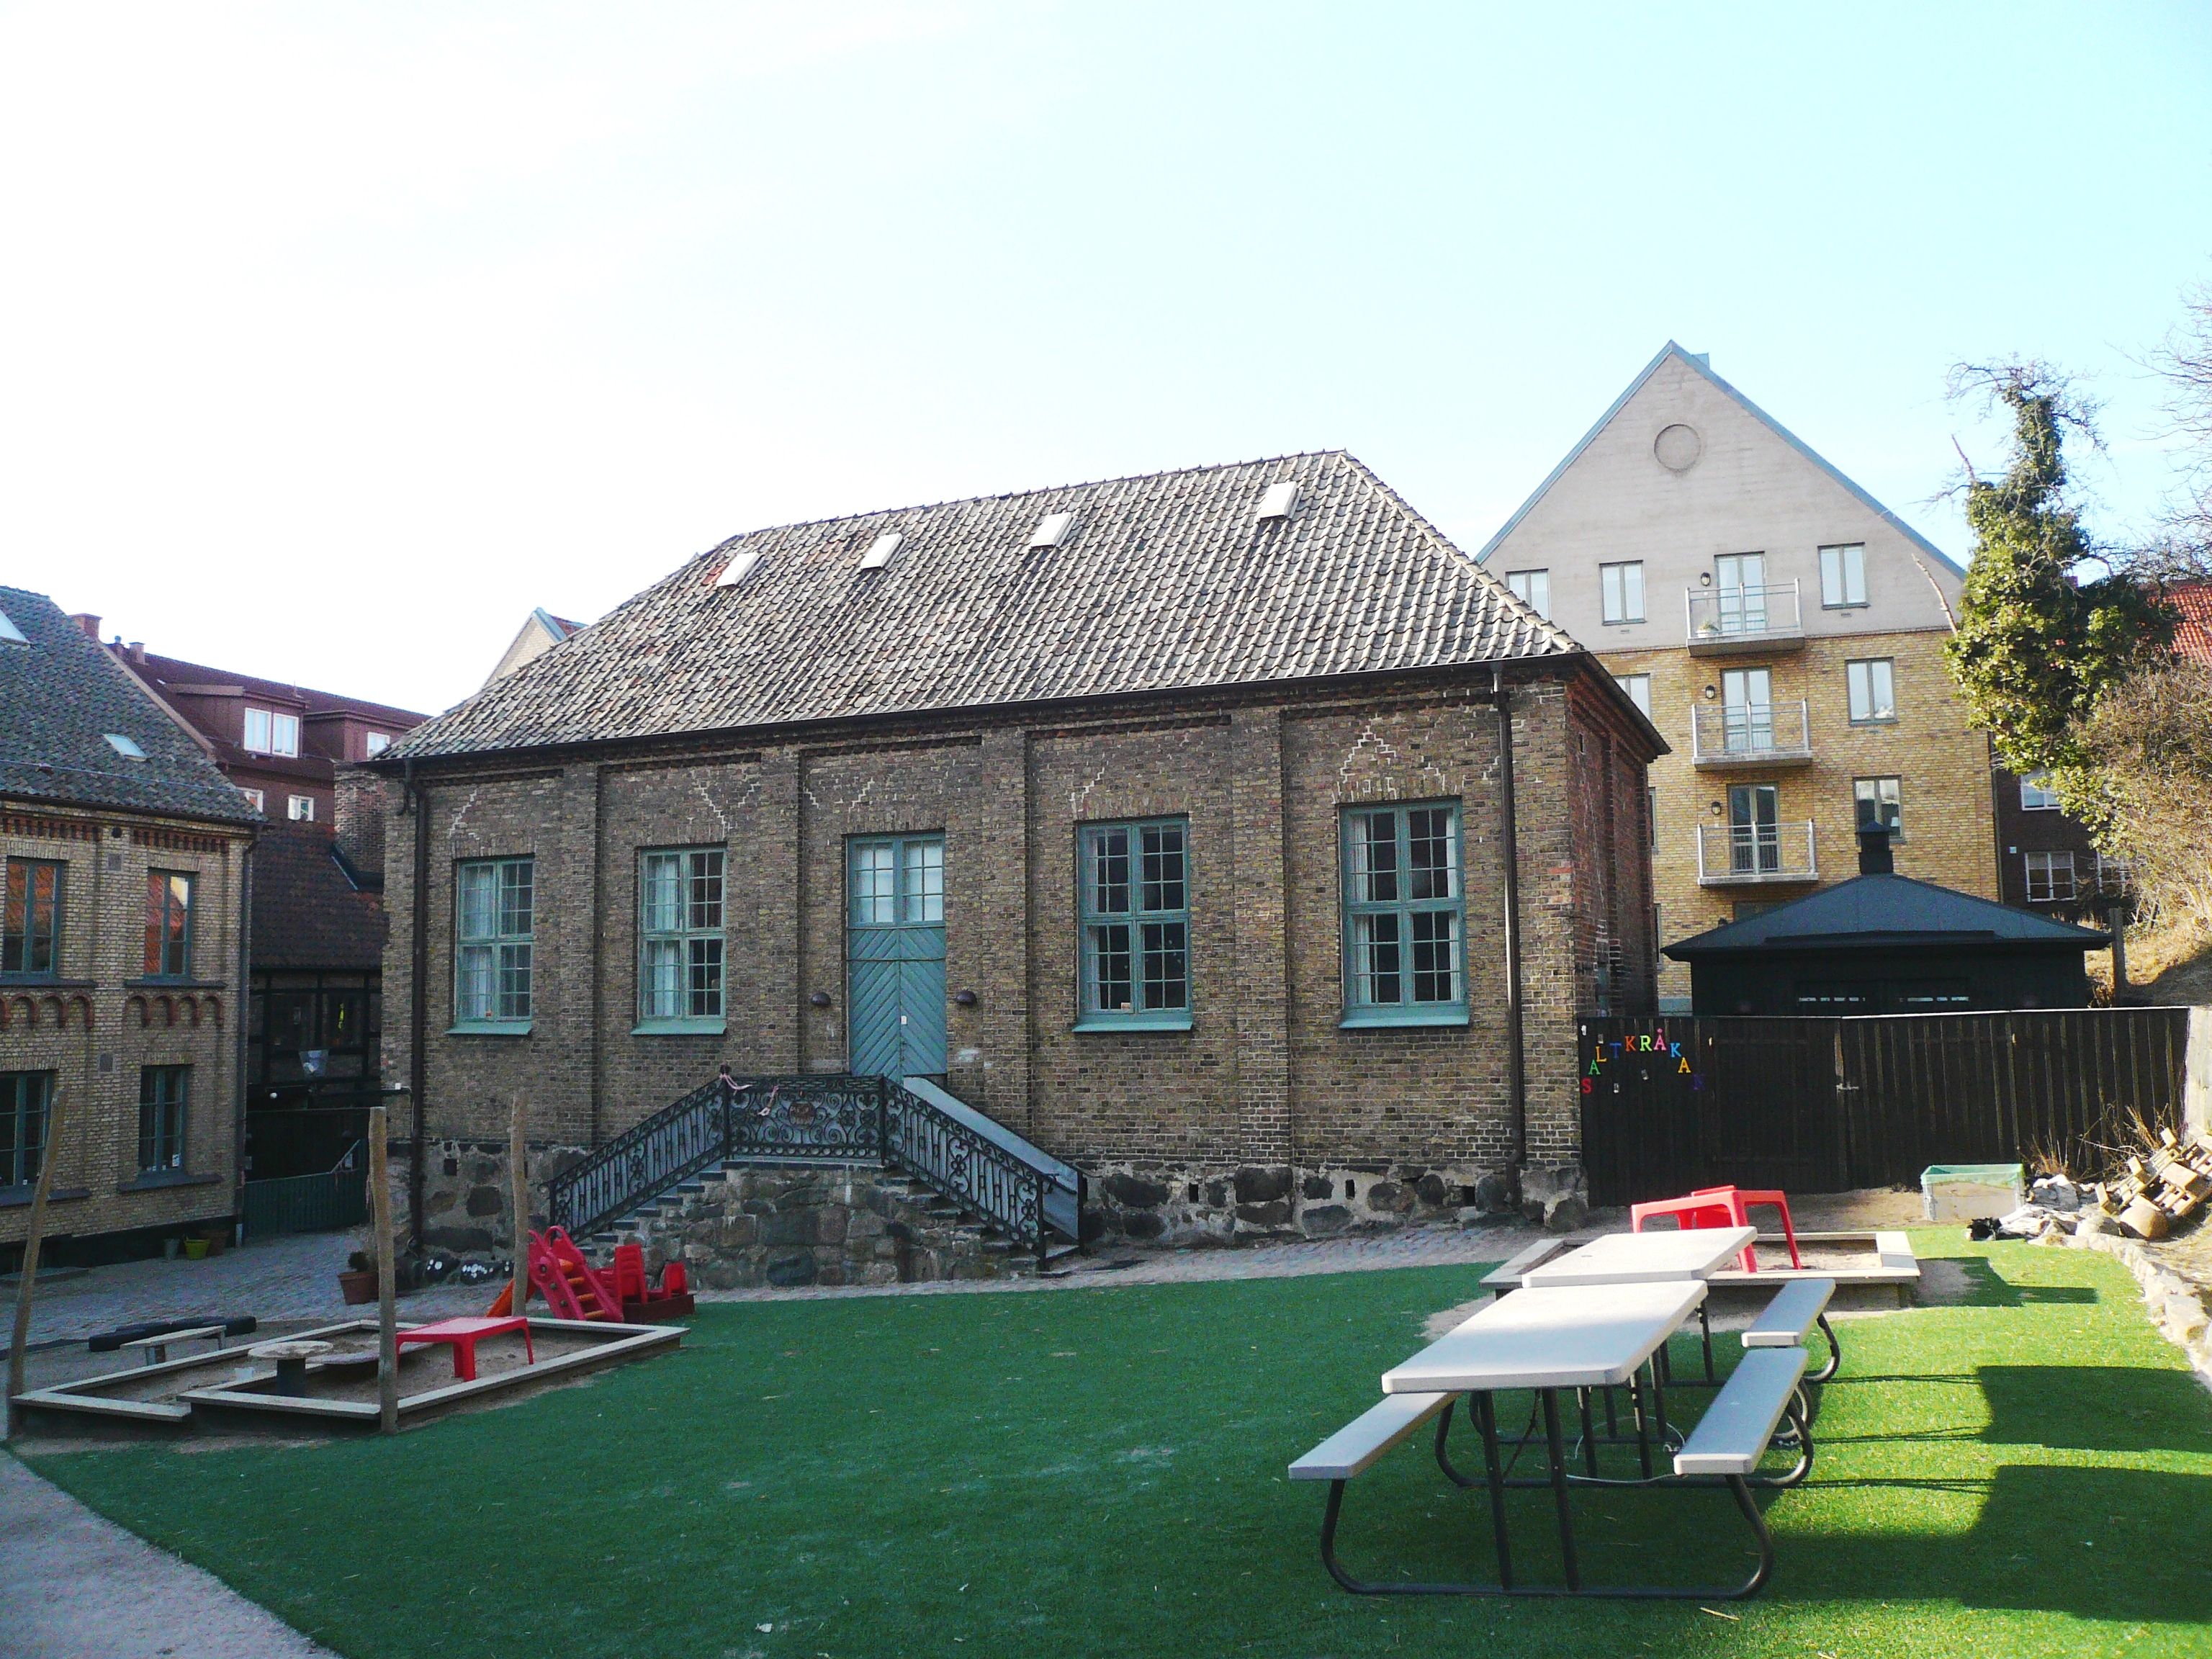 Före detta Stadsmuseet, Minerva 19, Helsingborg. Gymnastikhuset, det så kallade Fågelhuset, från söder.